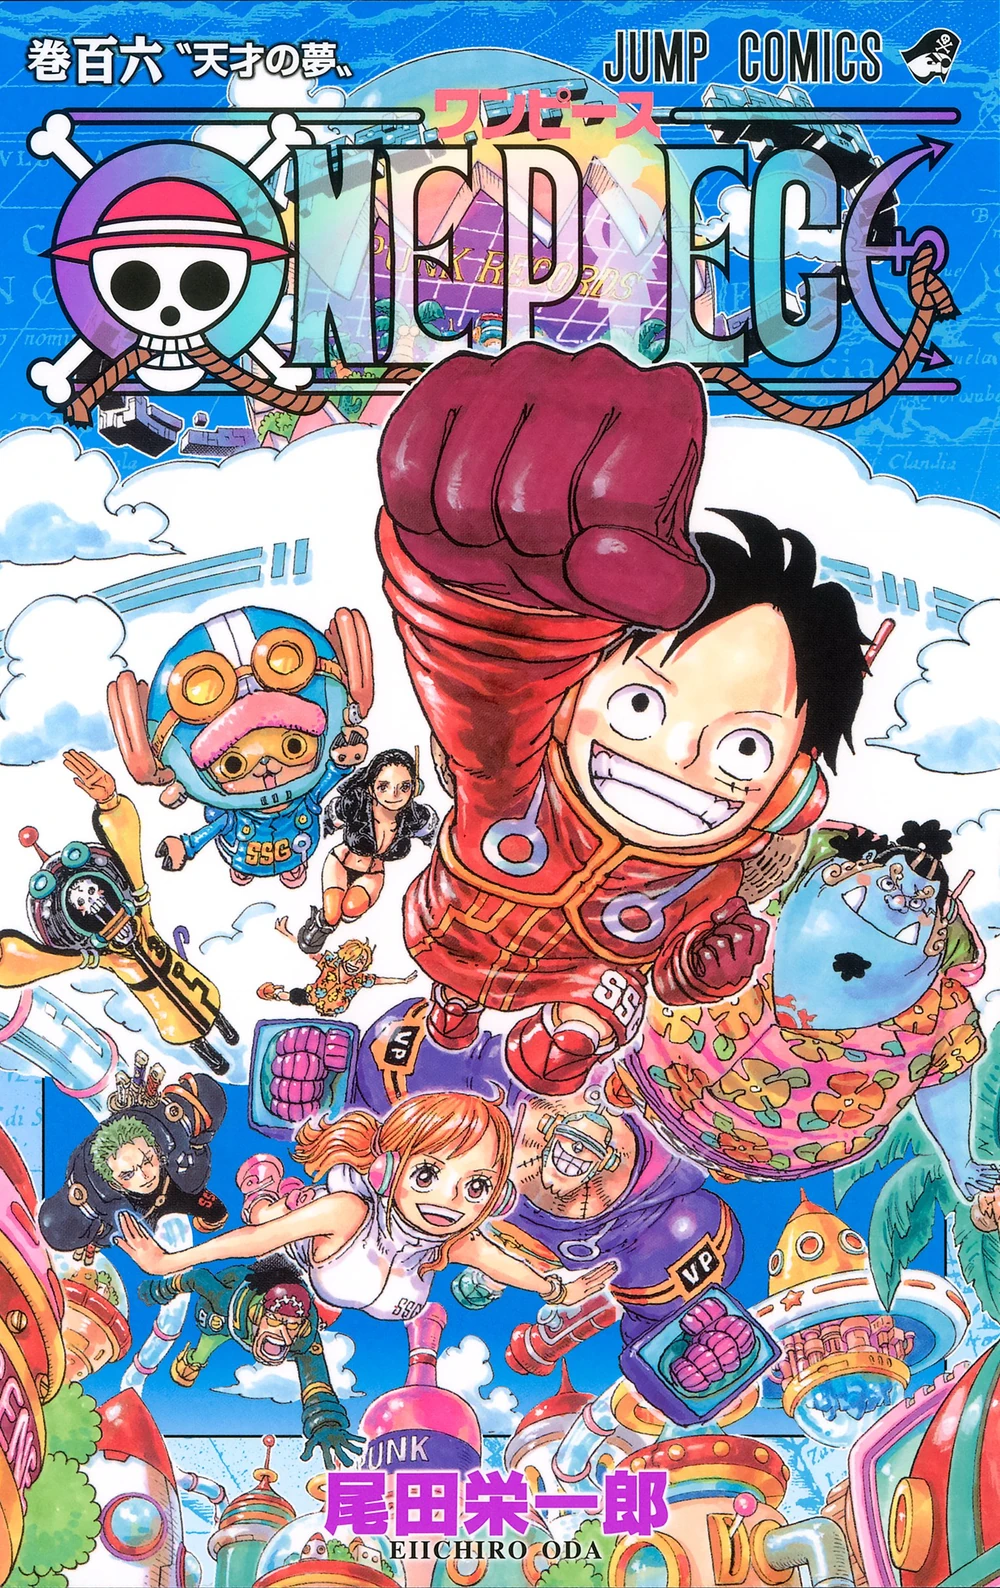 Episódio 61, One Piece Wiki